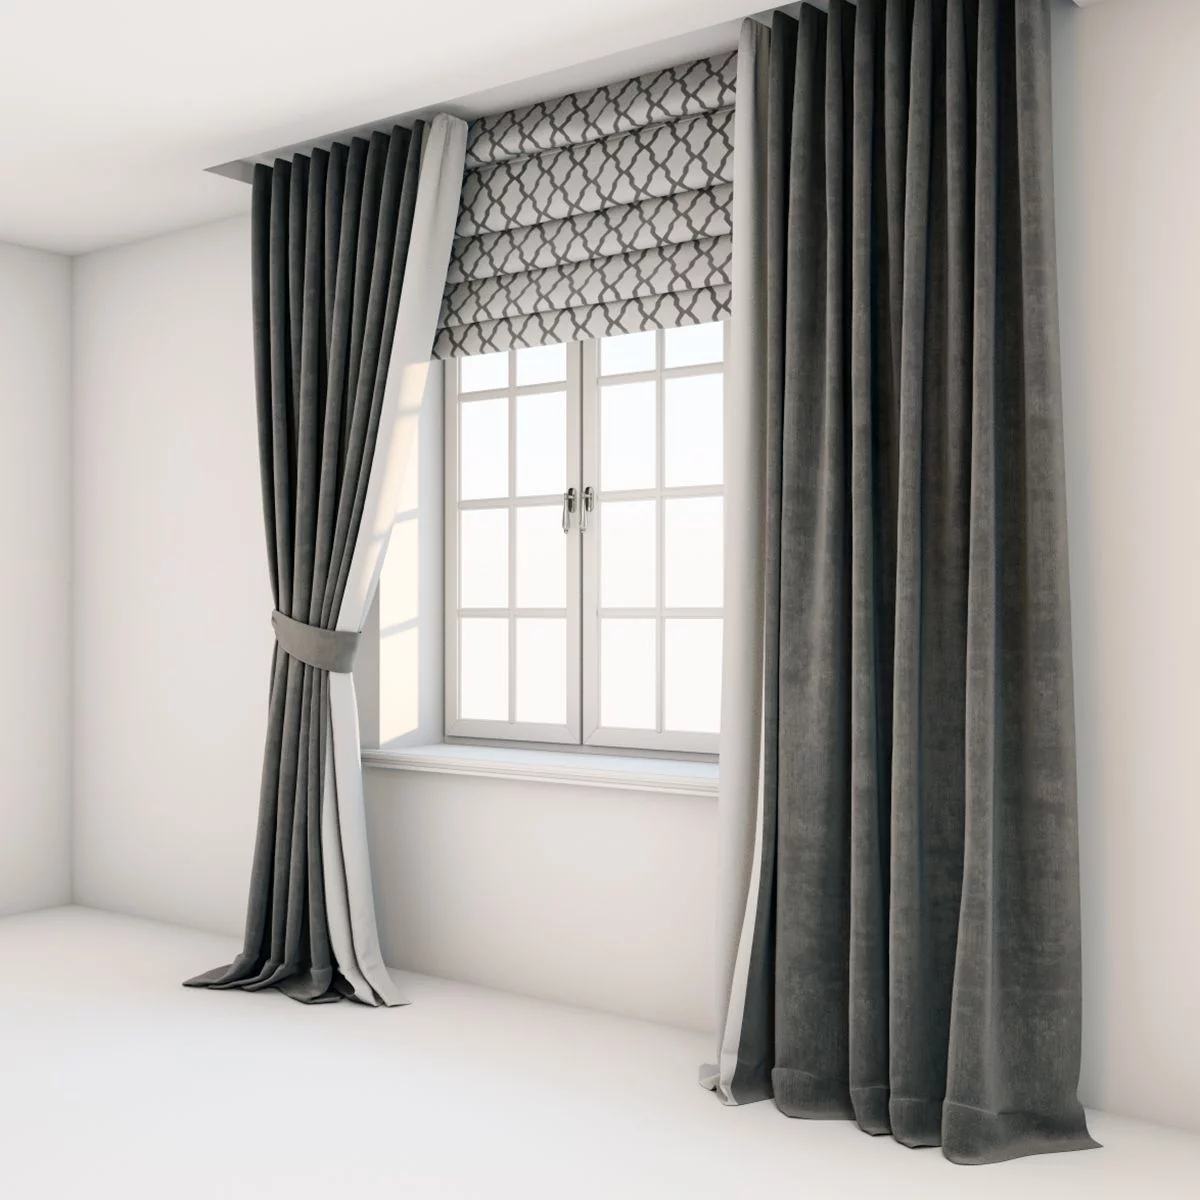 Floor length curtains